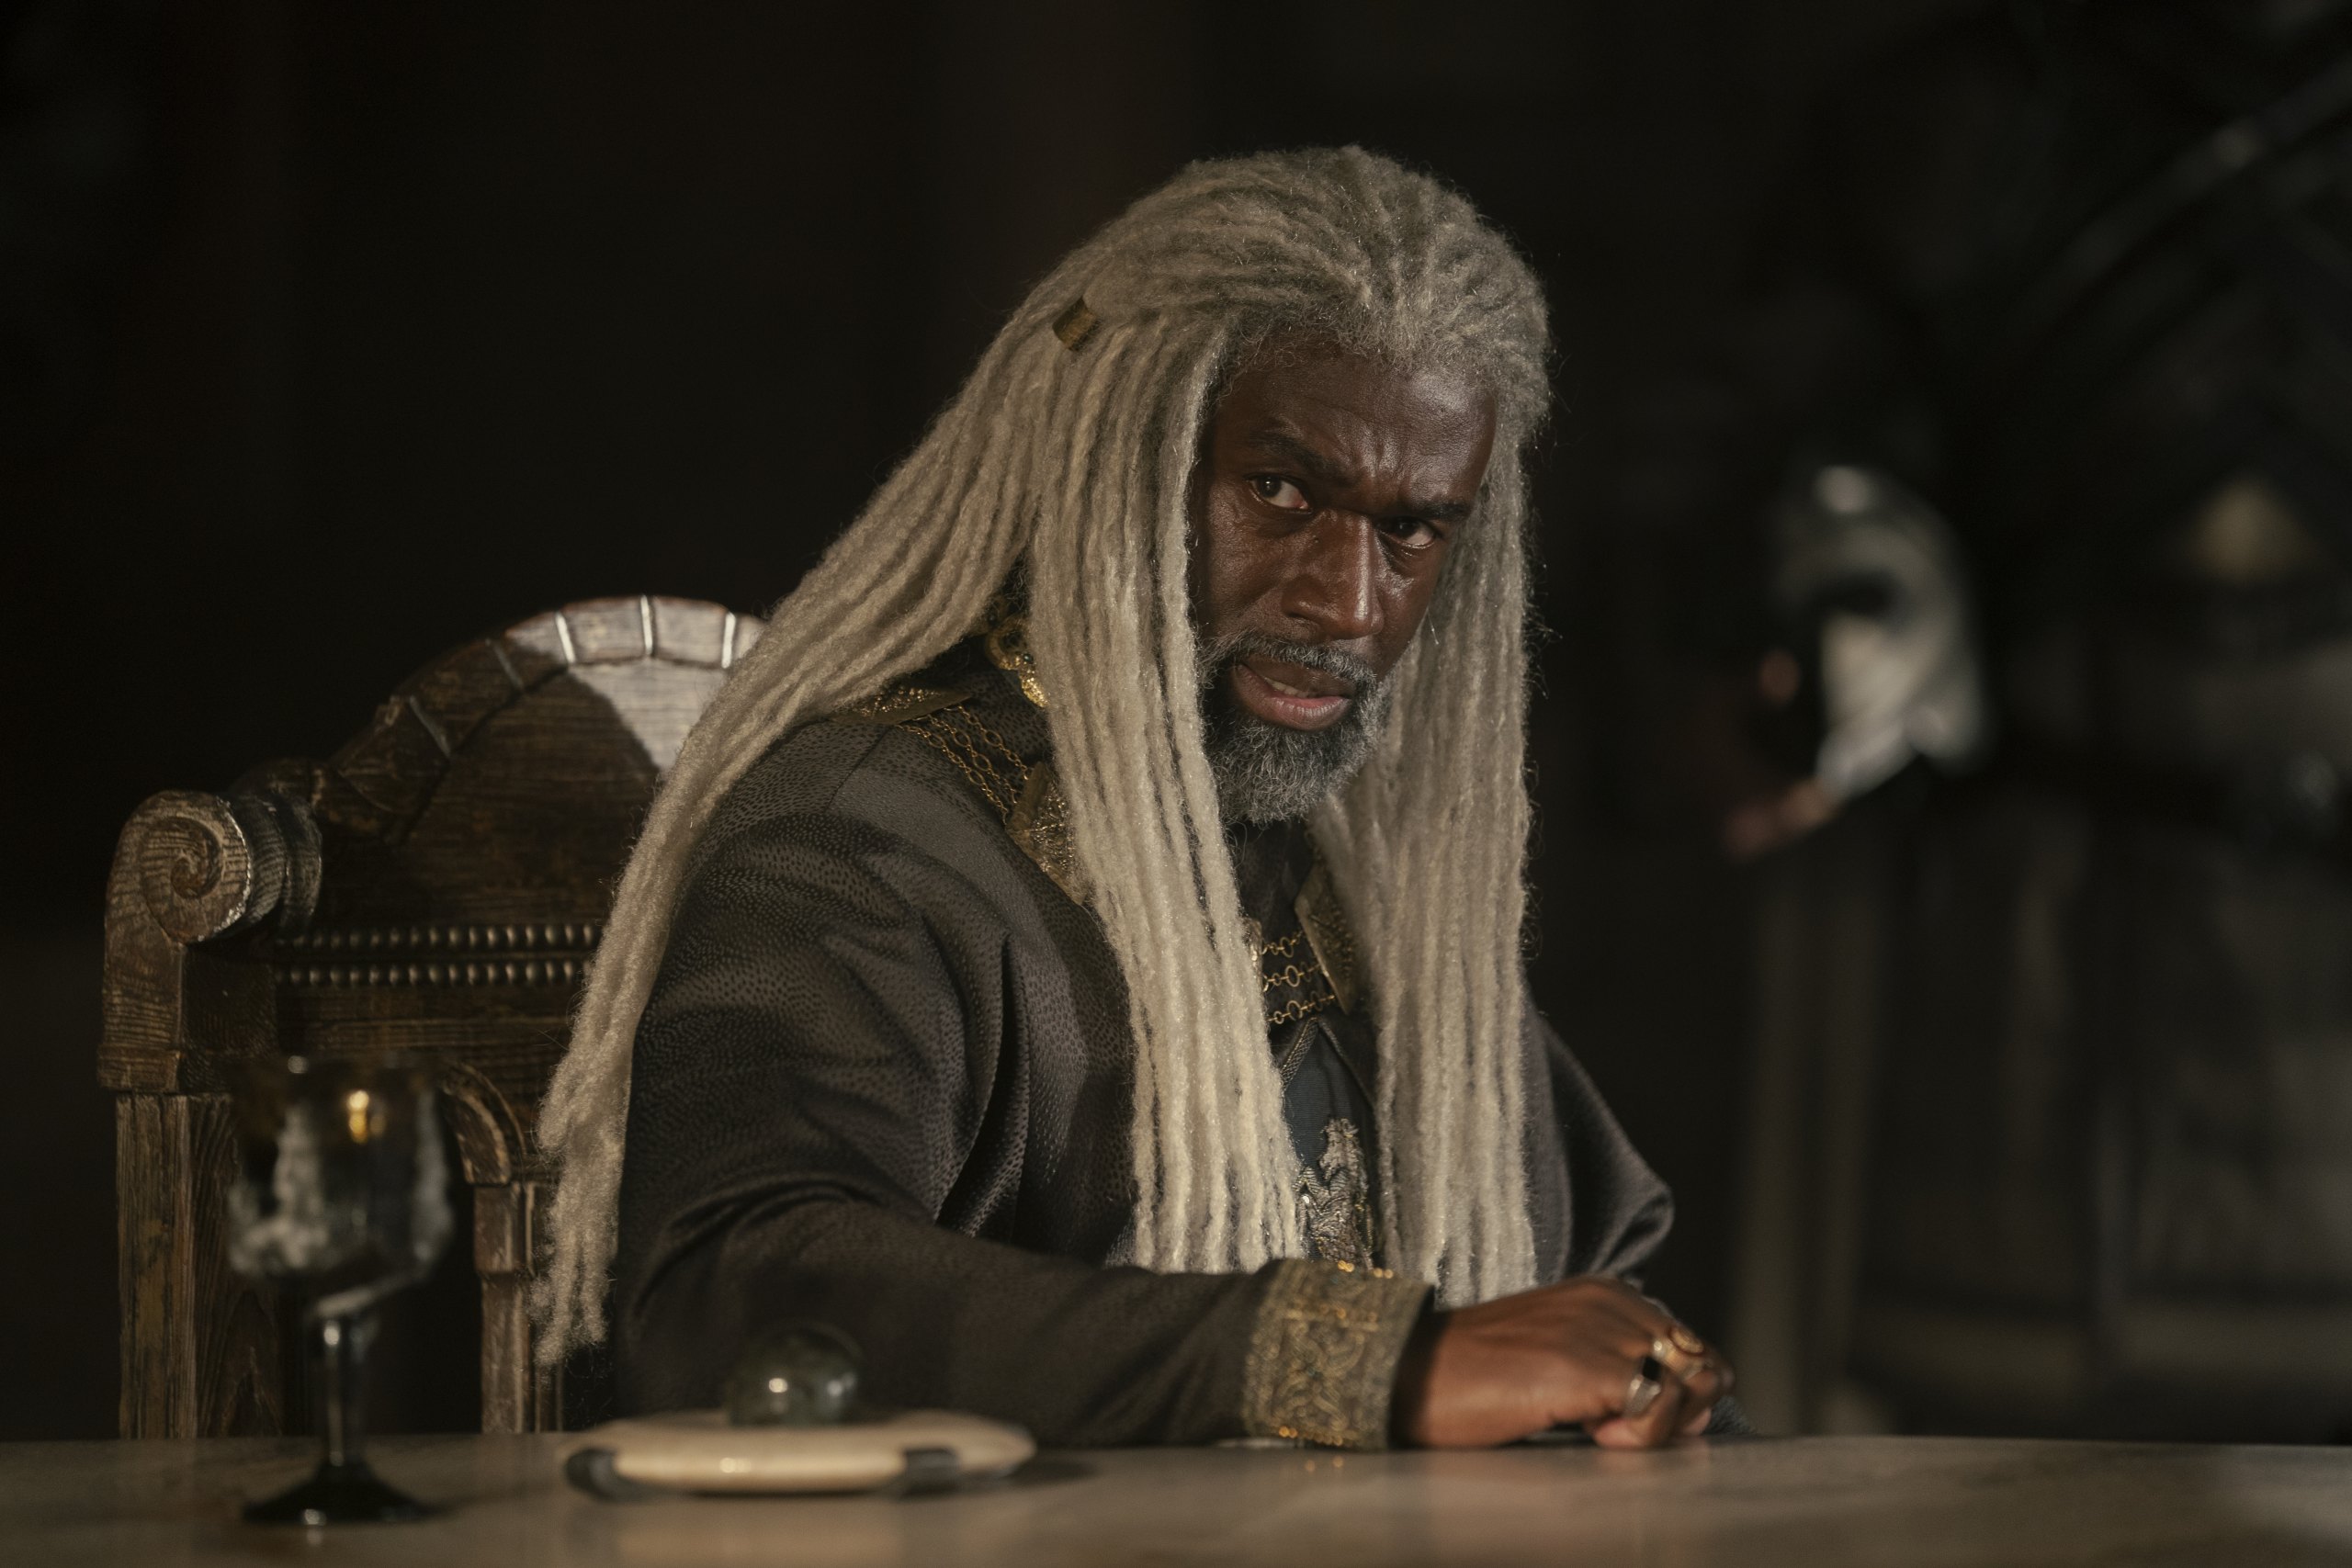 Steve Toussaint como Lord Corlys Velaryon em A Casa do Dragão (Reprodução / HBO)